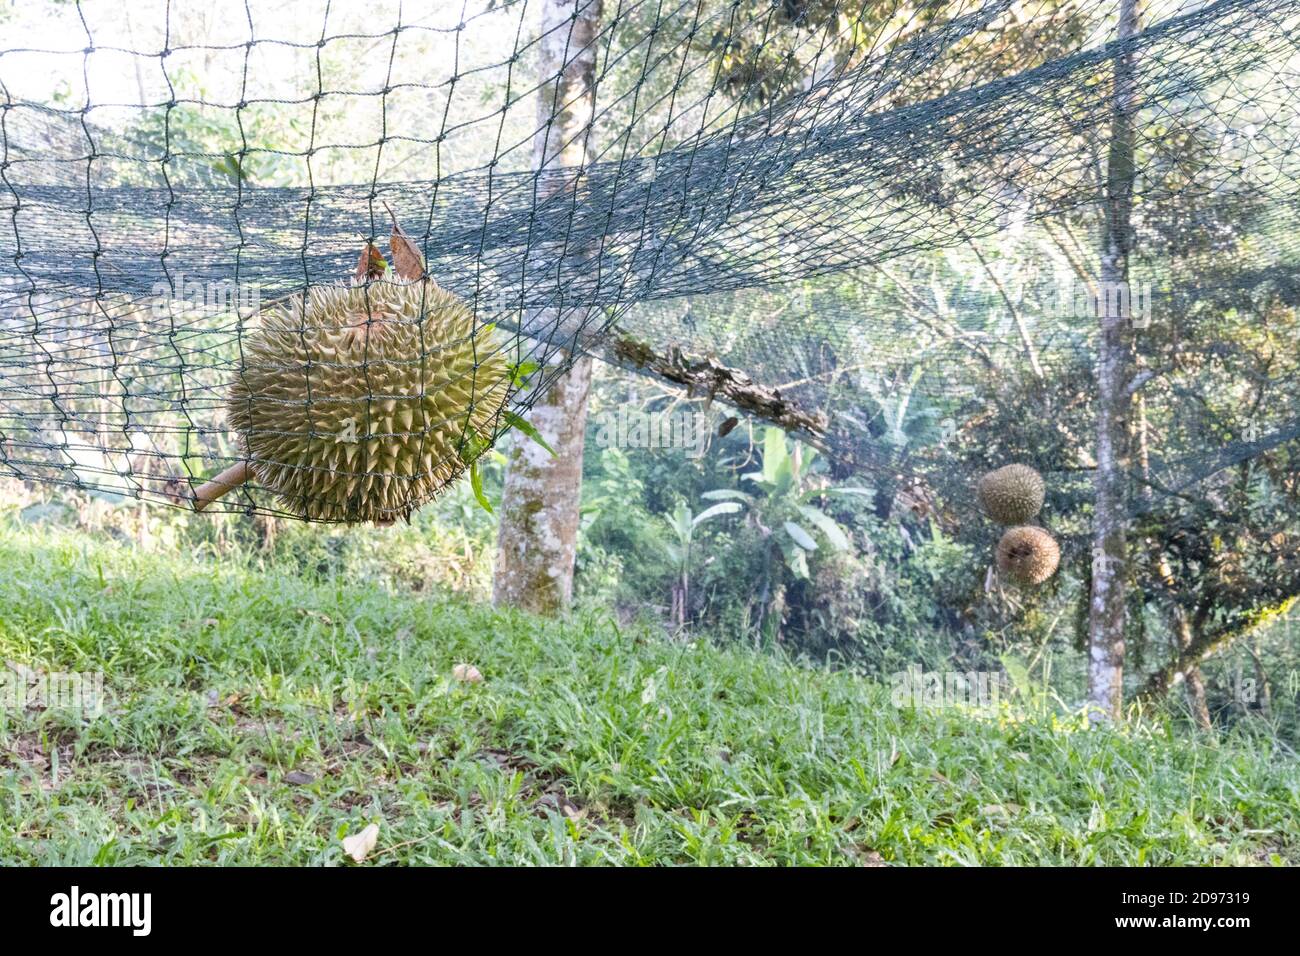 El durian maduro aterrizó en la red de seguridad para amortiguar el impacto de la caída. Foto de stock